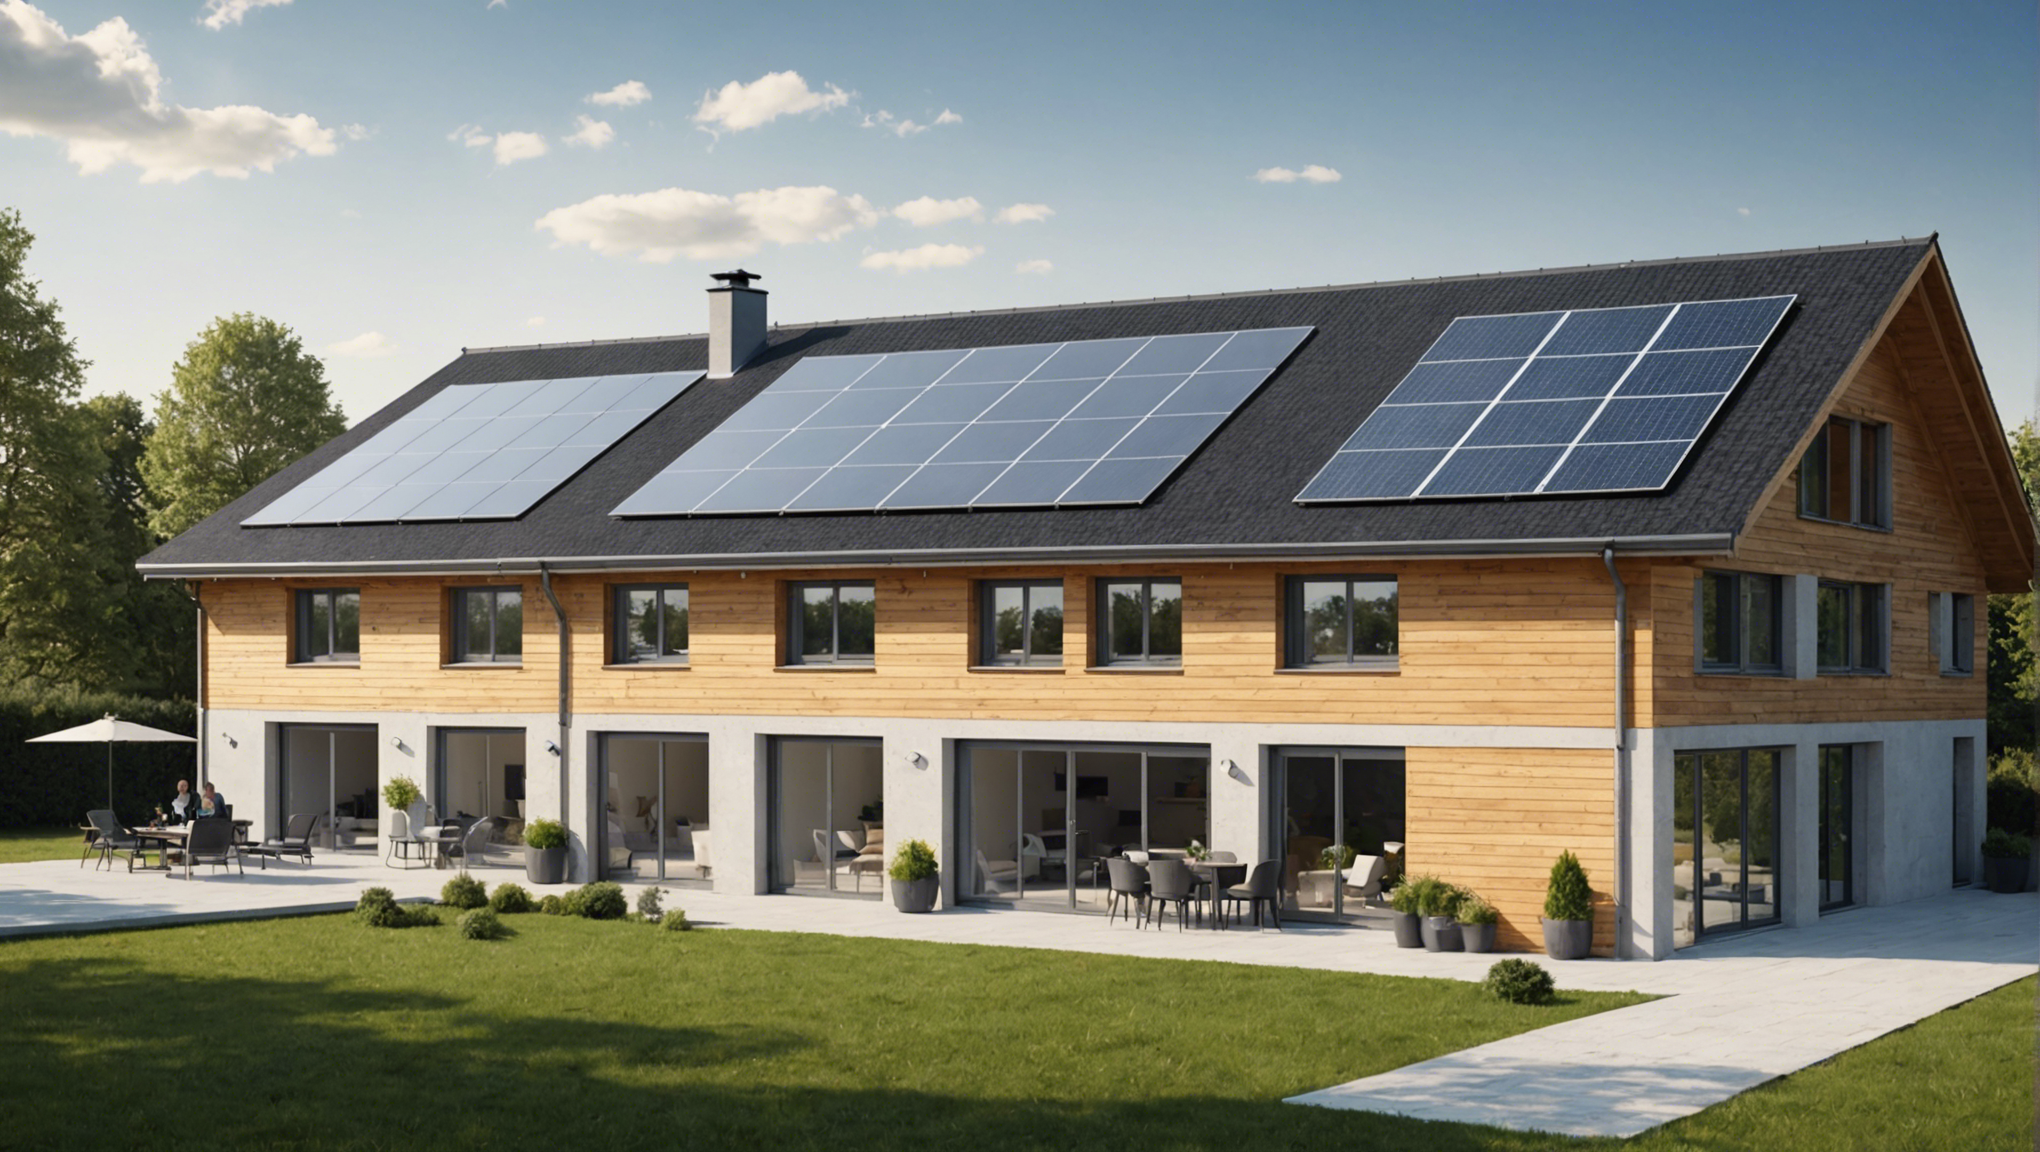 découvrez les avantages de l'isolation de toiture avec isover en france : économies d'énergie, confort thermique, réduction des émissions de co2 et bien plus encore !